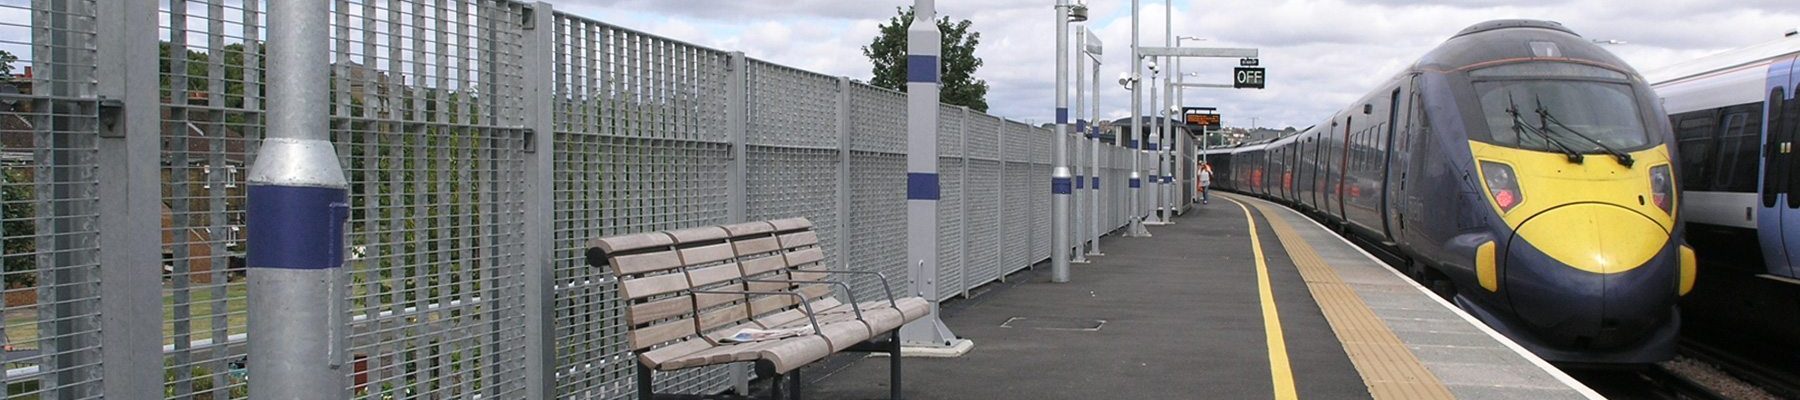 Banner Torino 33 fence grating barrier Rochester Station 03